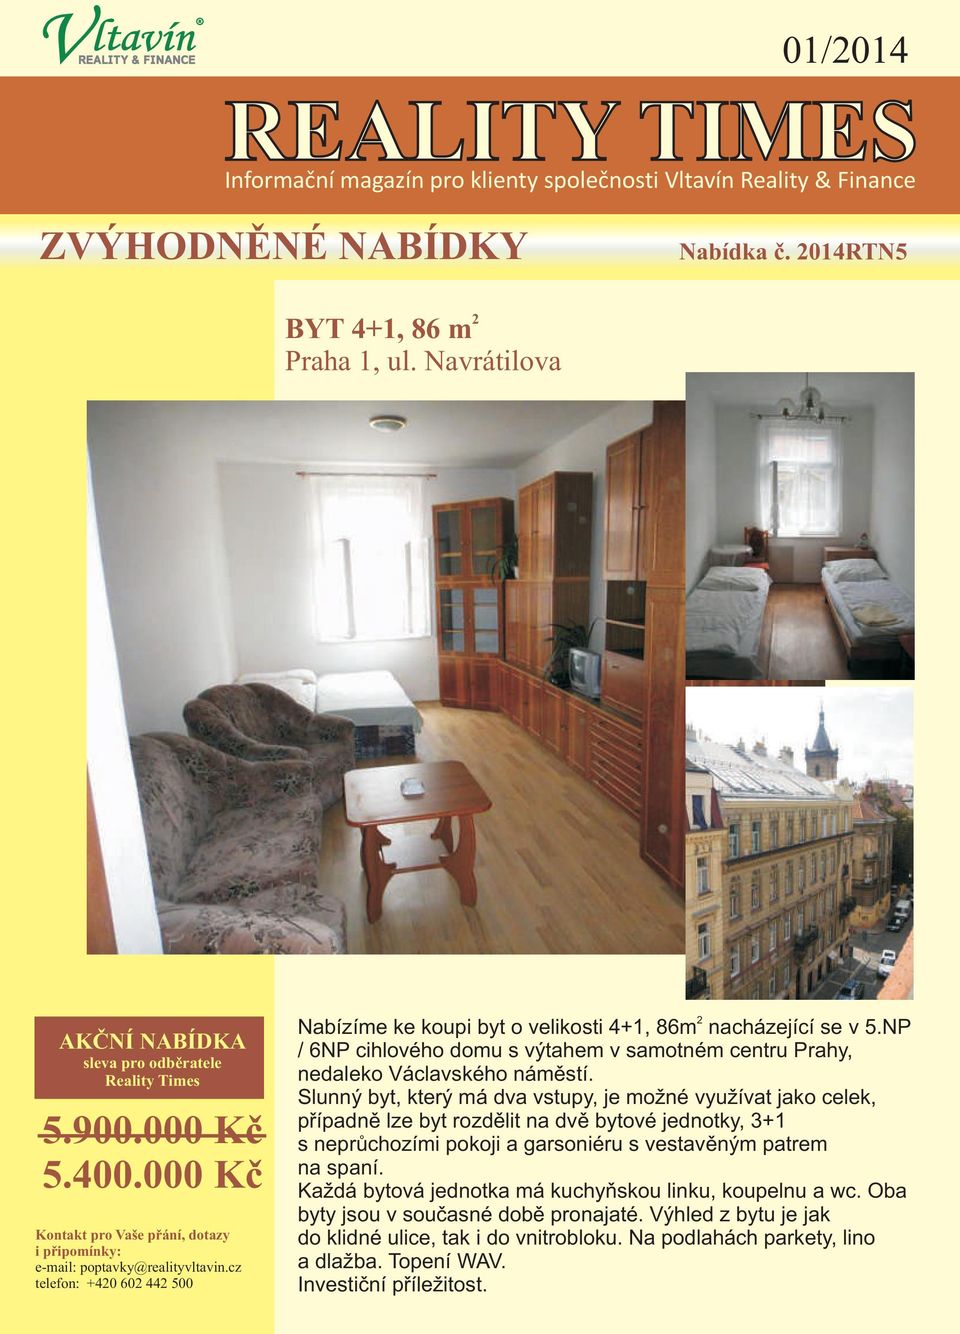 Slunný byt, který má dva vstupy, je možné využívat jako celek, pøípadnì lze byt rozdìlit na dvì bytové jednotky, 3+1 s neprùchozími pokoji a garsoniéru s vestavìným patrem na spaní.